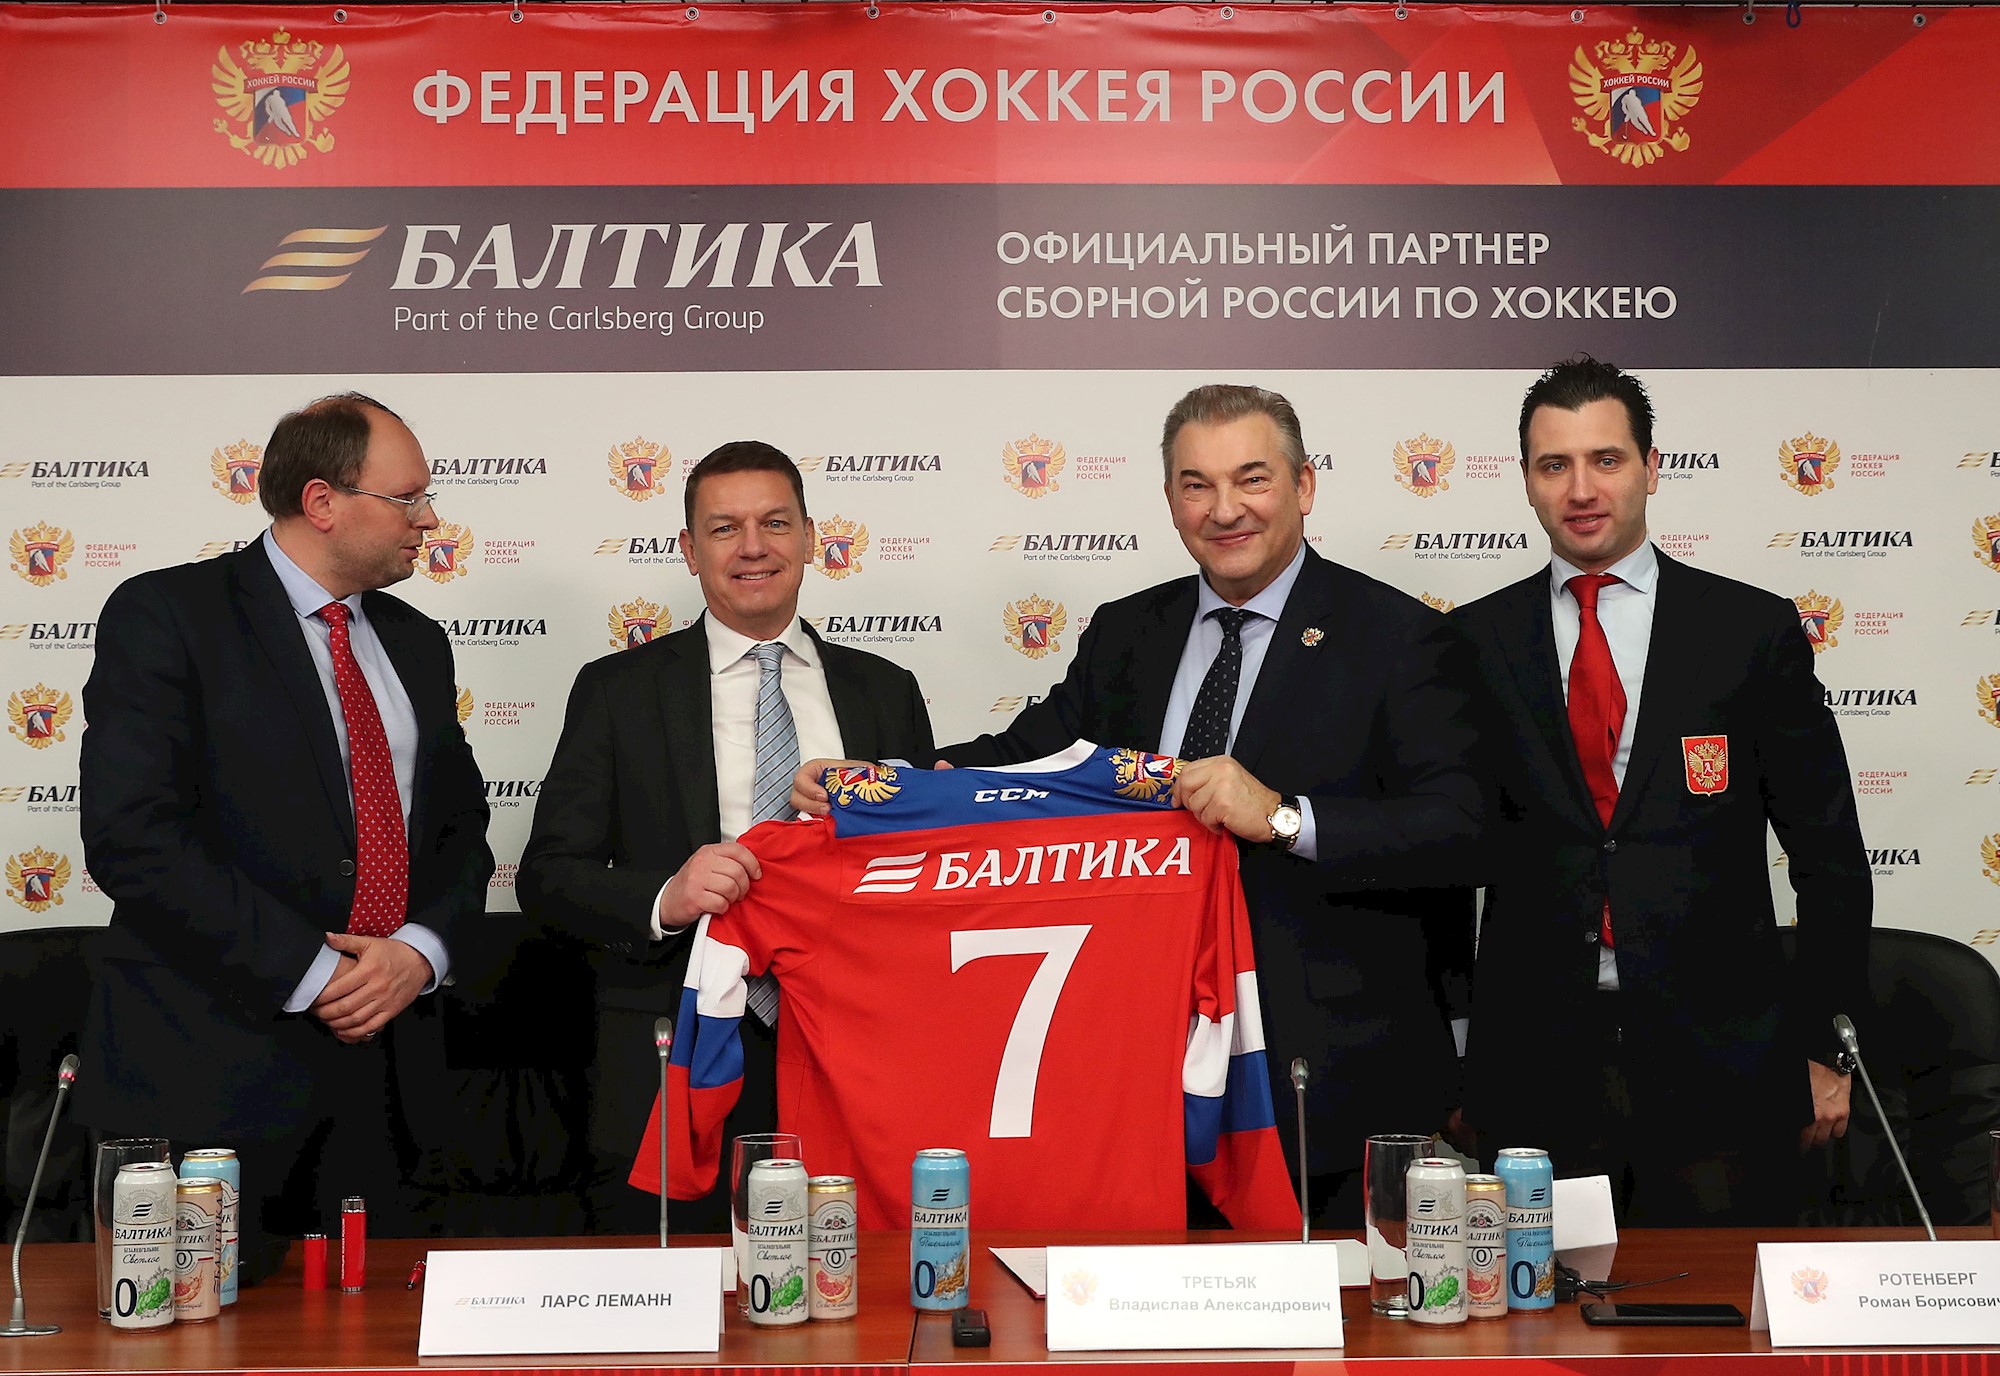 «Балтика» и Федерация Хоккея России подписали договор о партнерстве